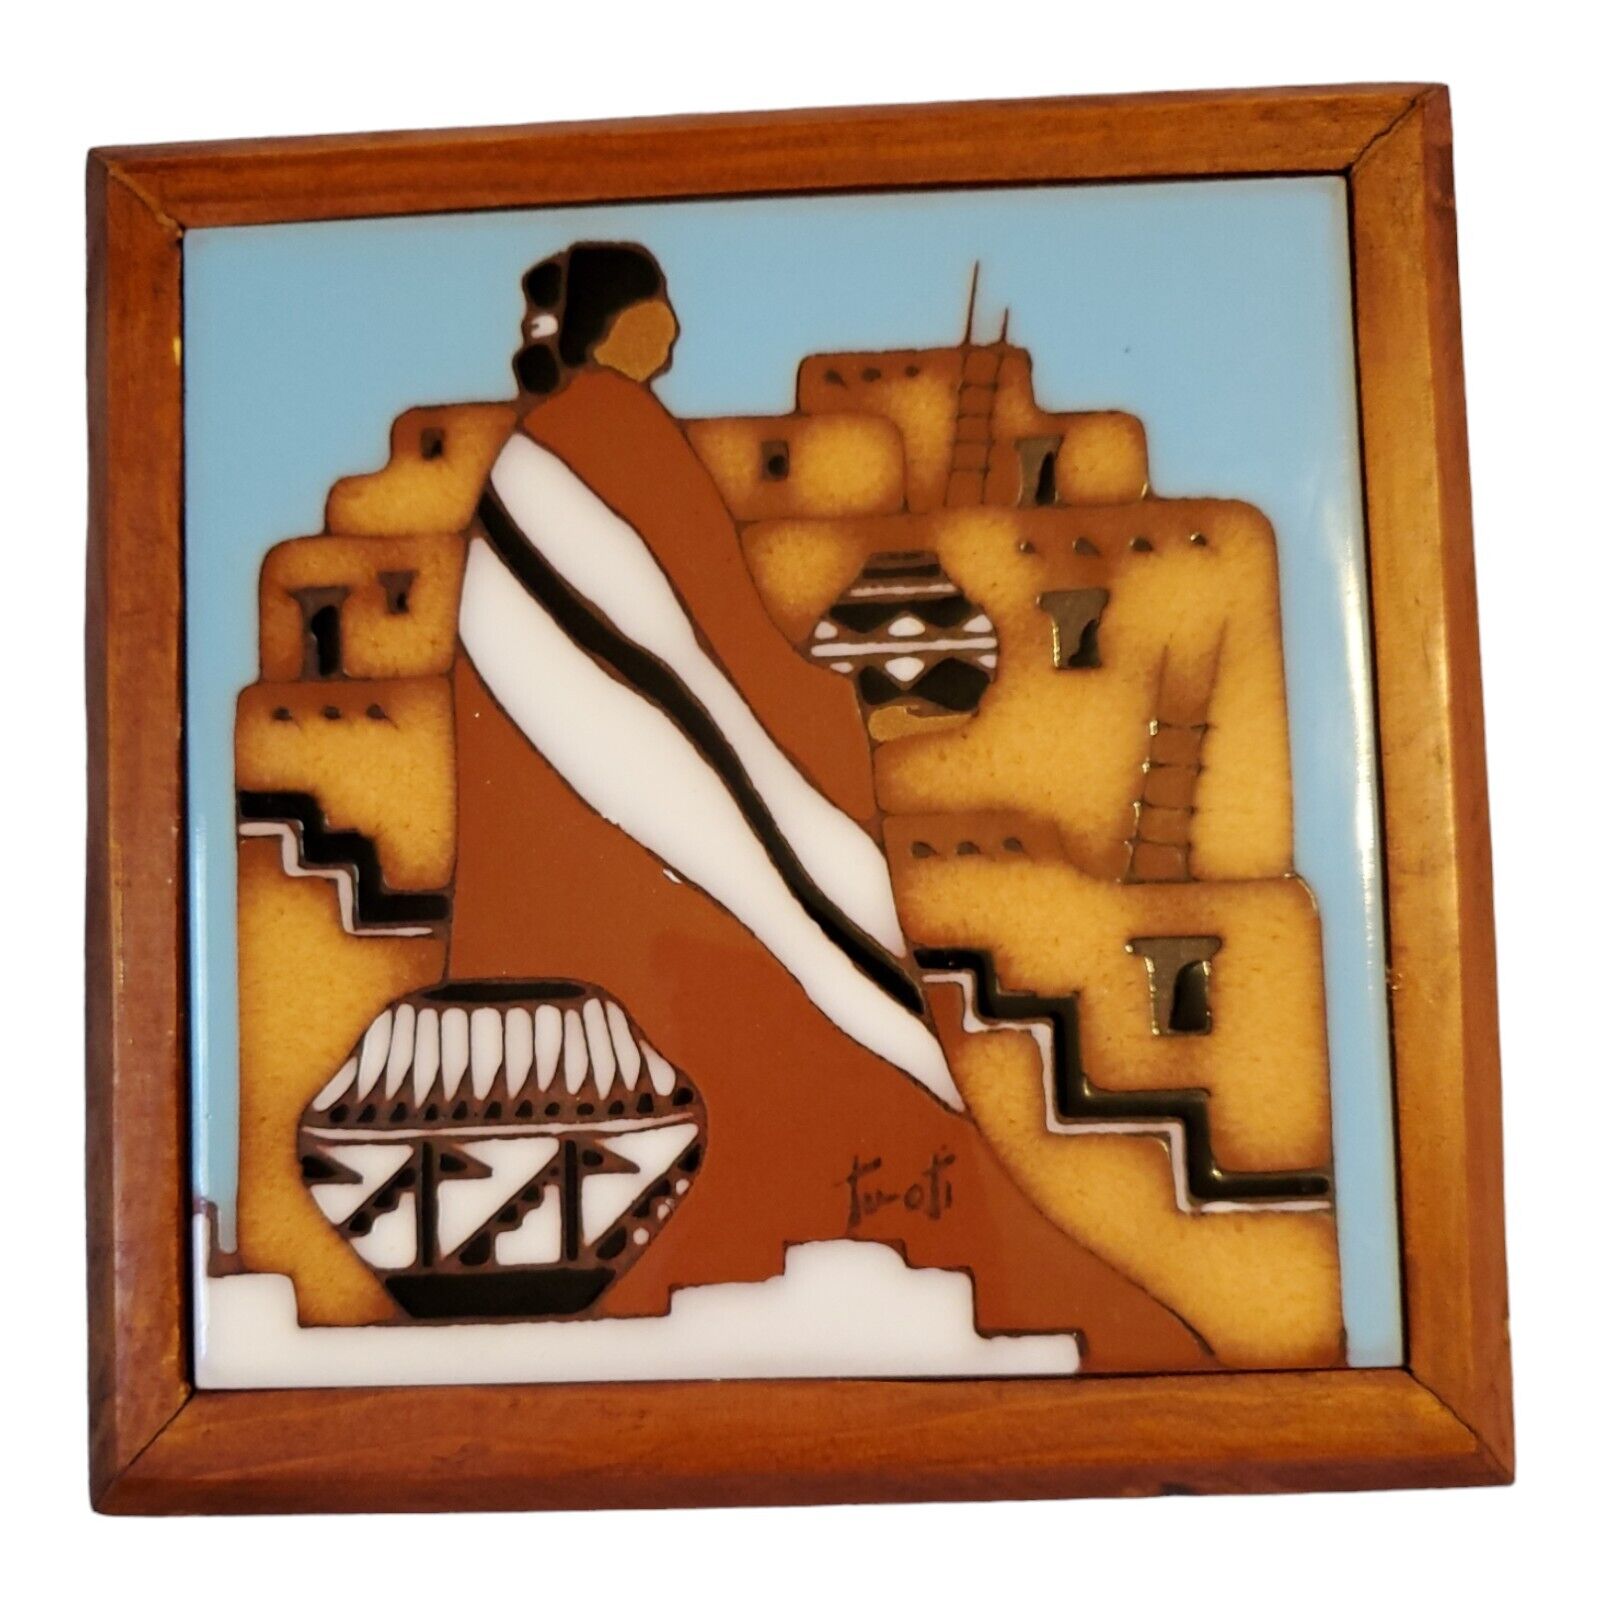 1990 Earthtones Native American Southwestern Terracotta Tile Trivet Signed TUOTI